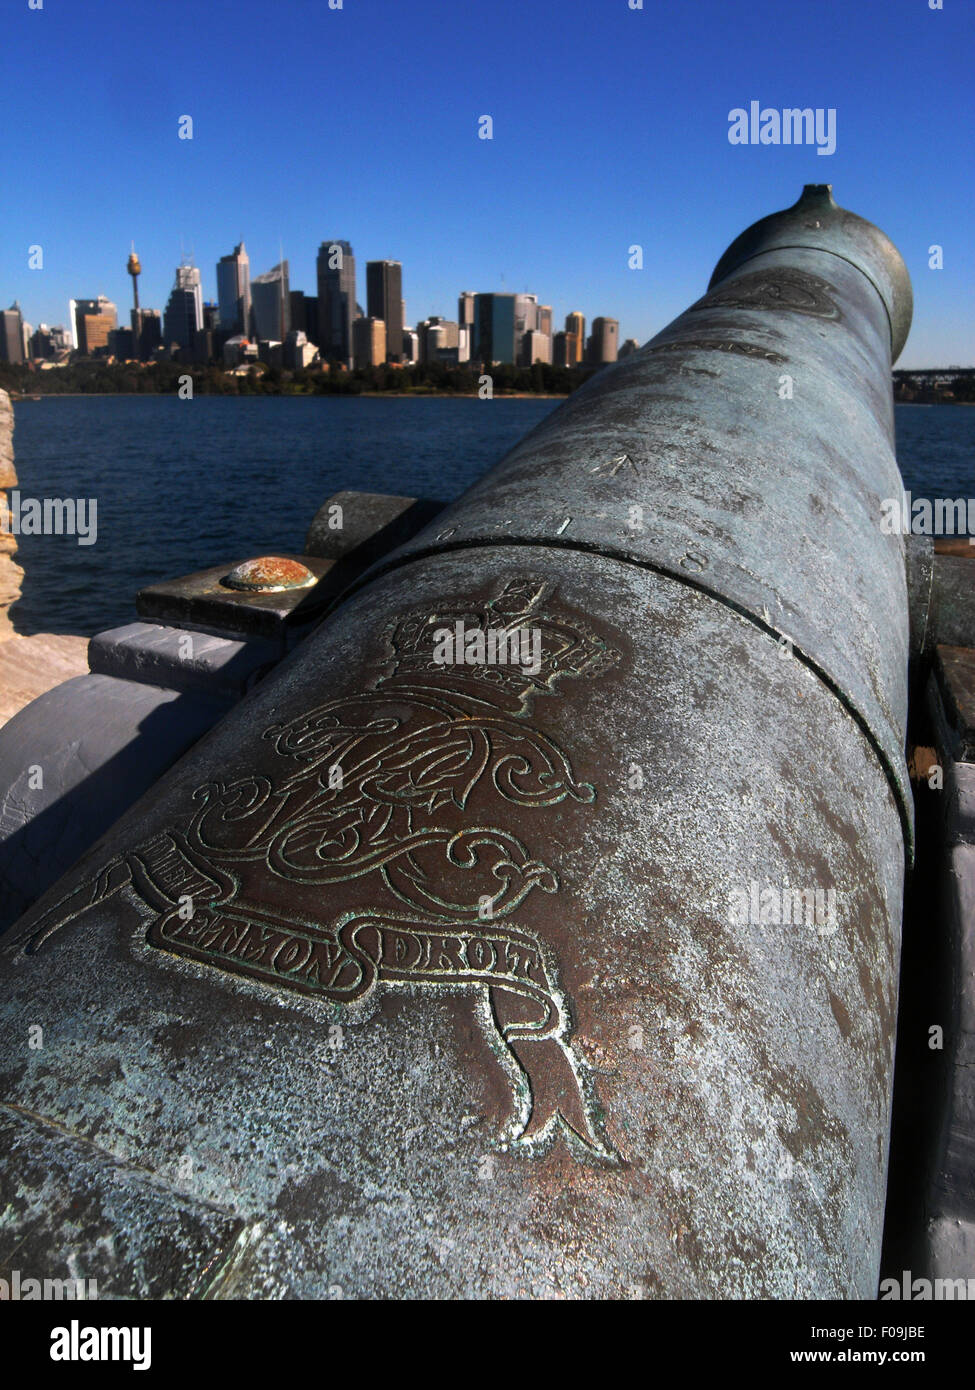 Royal insignia goffrato sul cannone storico affacciato sul Porto di Sydney e il CBD, Fort Denison (Pinchgut Island), NSW Australia. Foto Stock